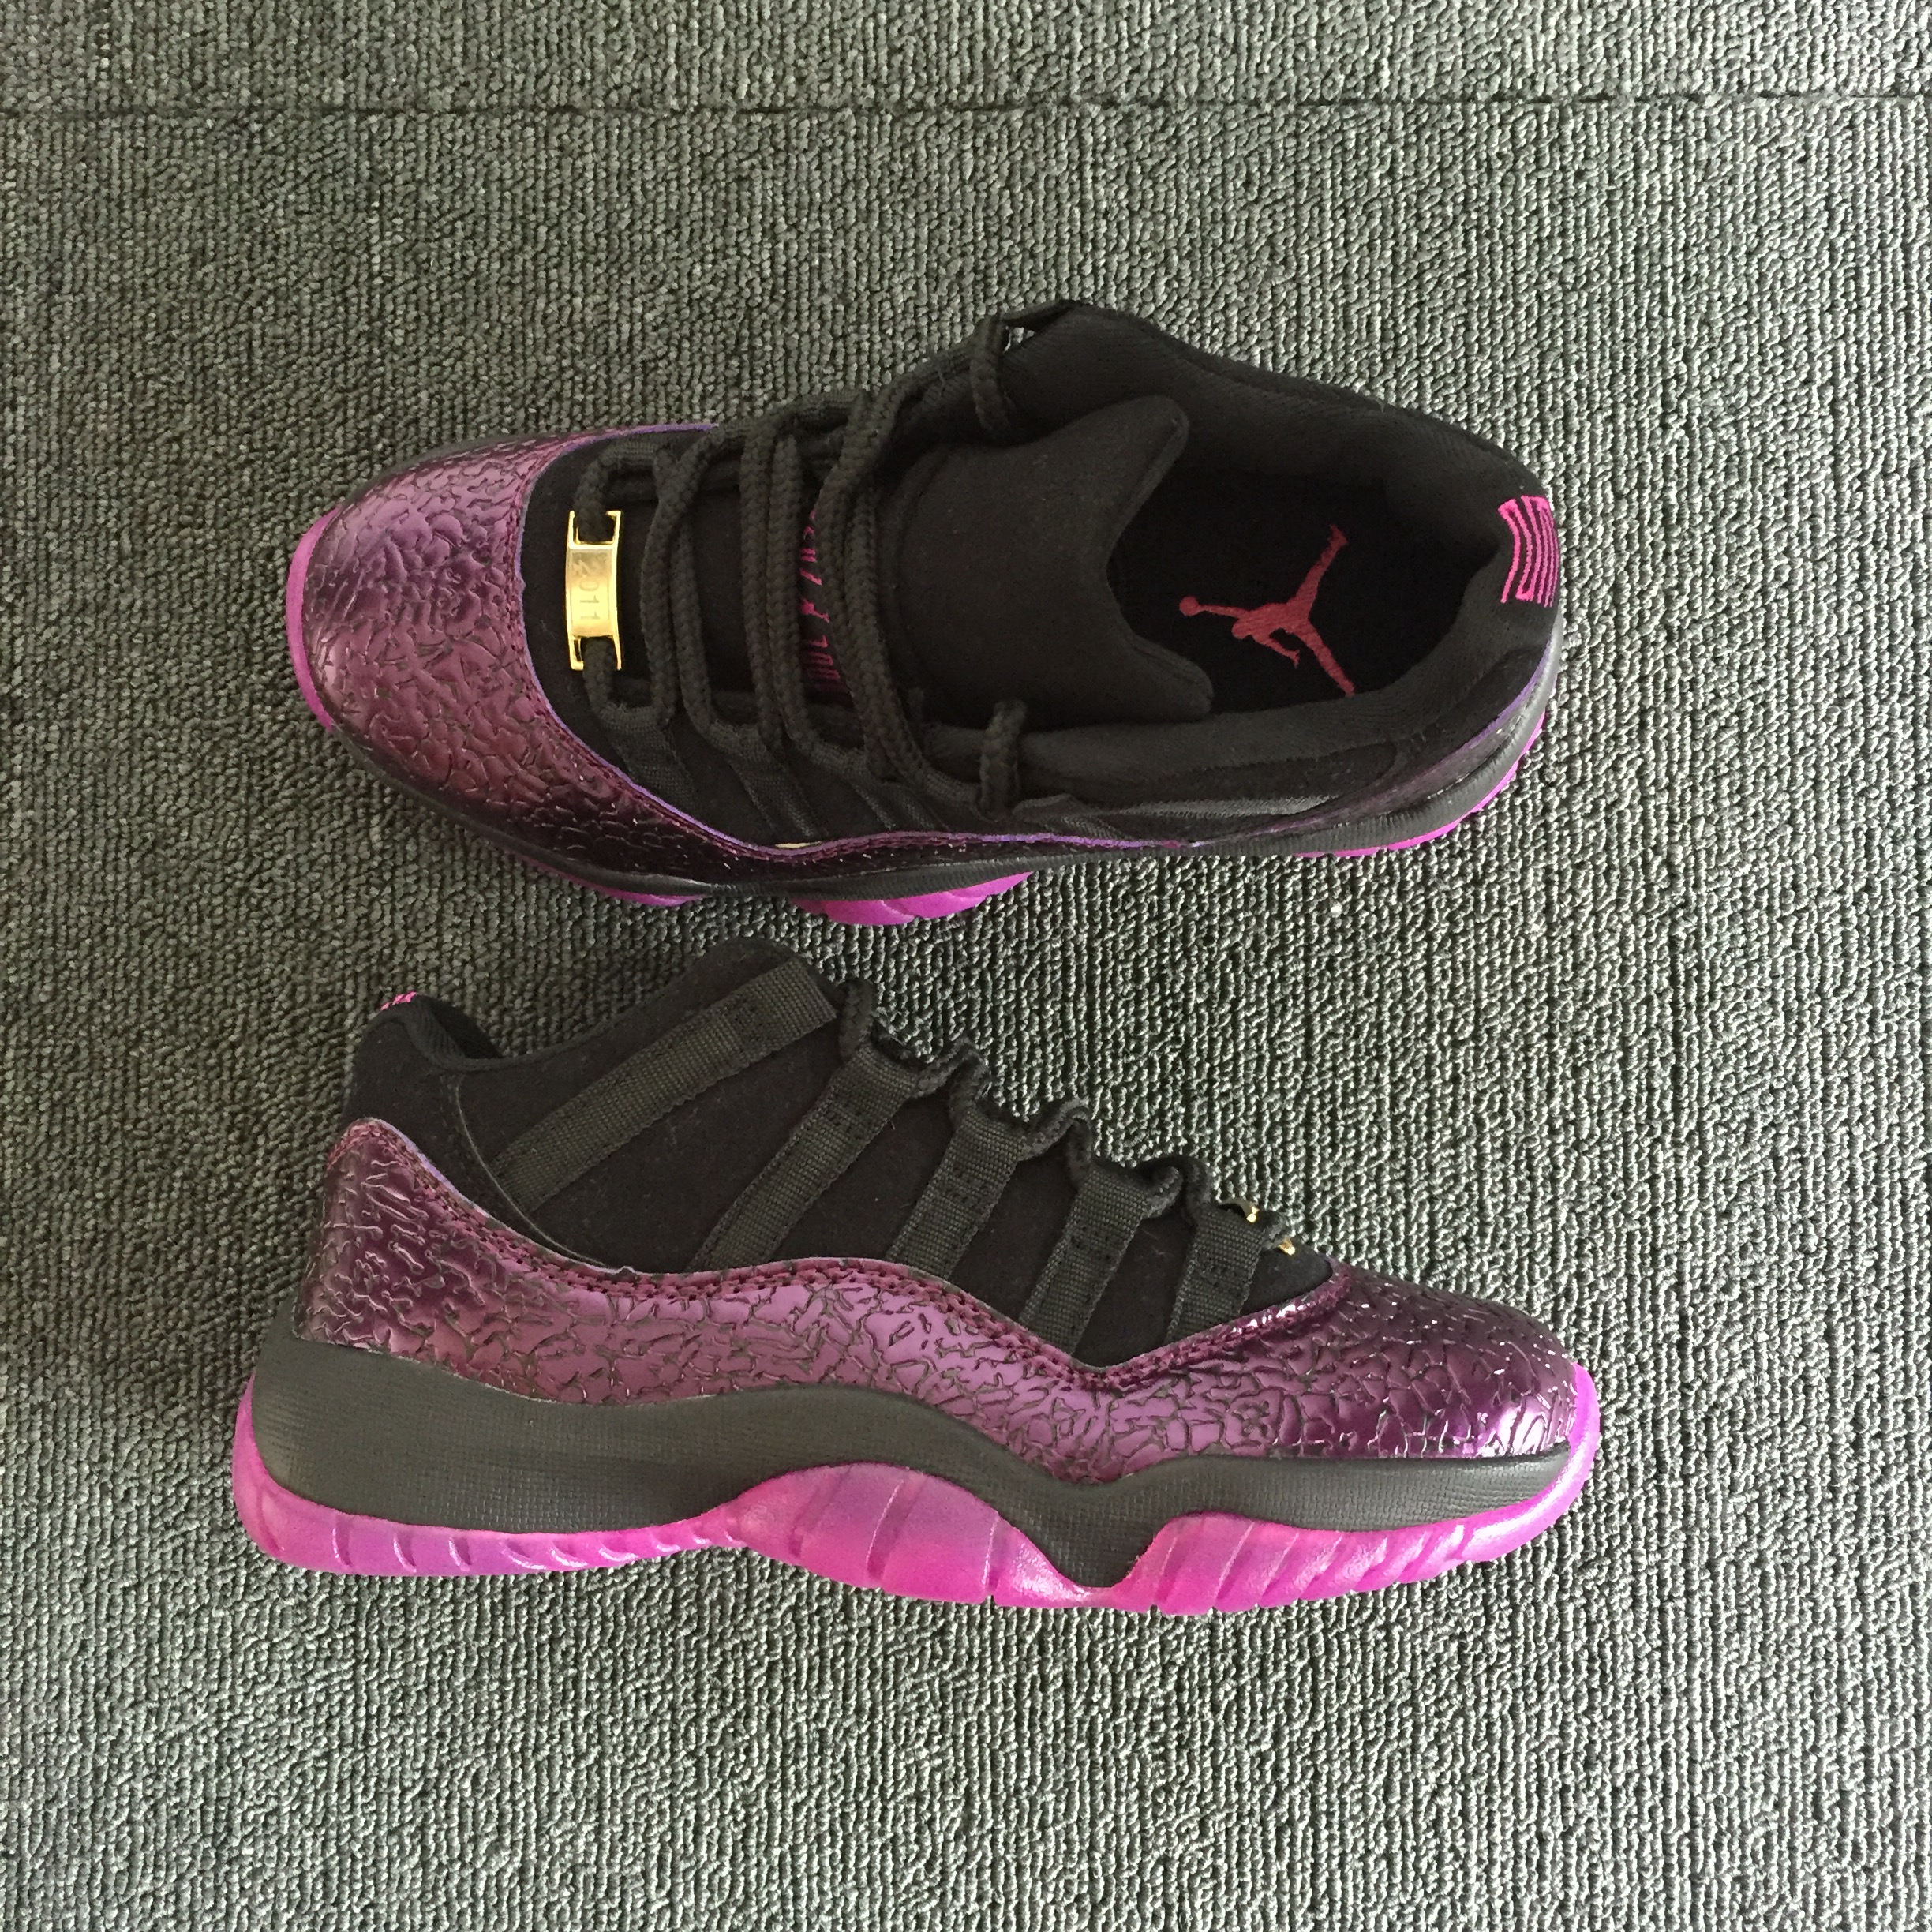 2018 Air Jordan 11 Crack Black Pink Shoes For Women